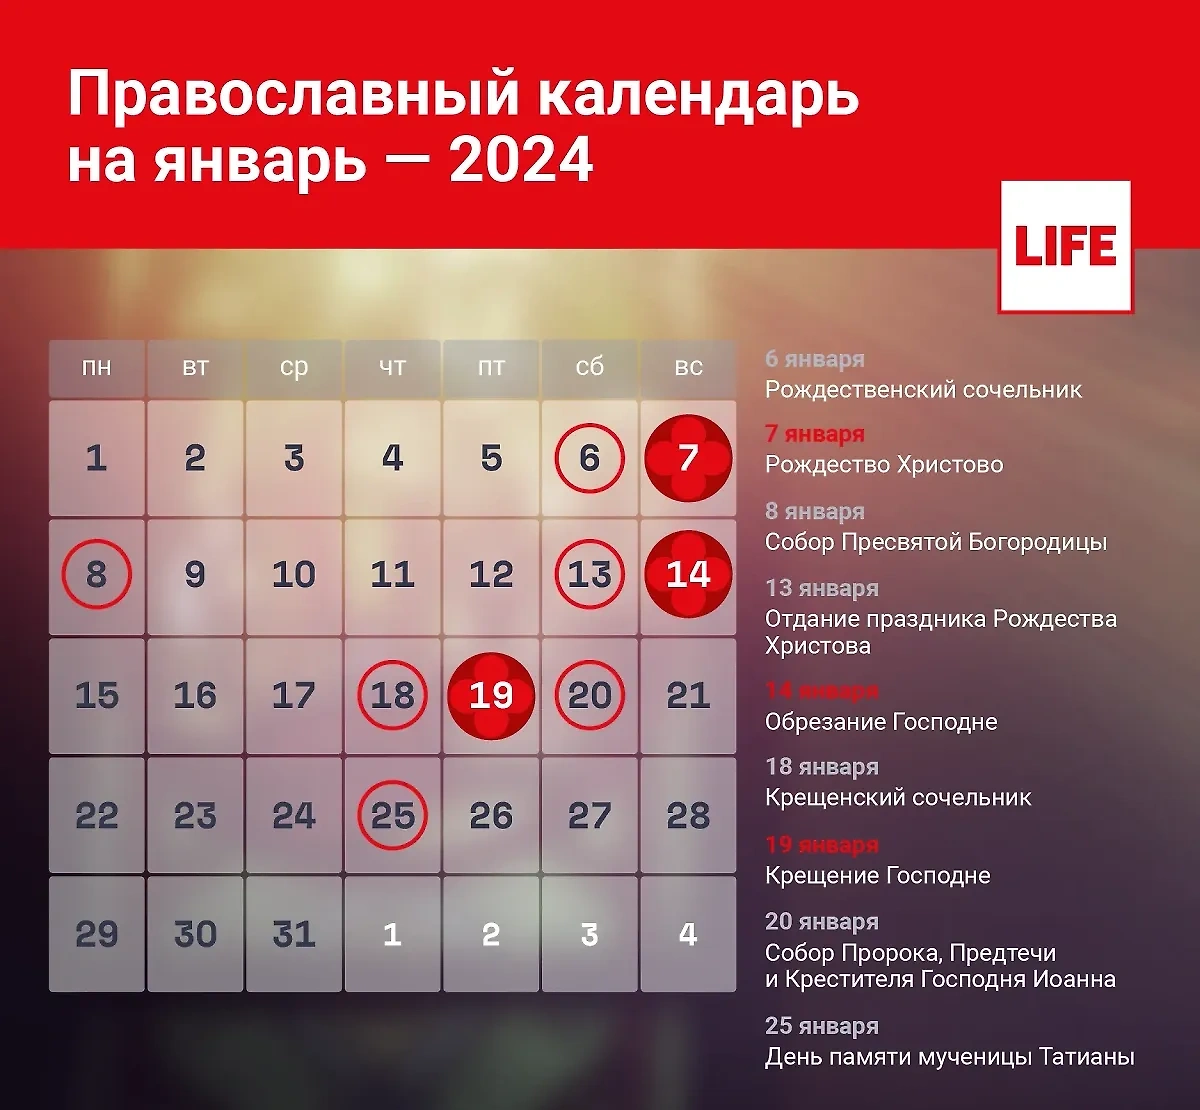 Какой сегодня церковный праздник? Православный календарь на январь 2024 года. Инфографика © LIFE 